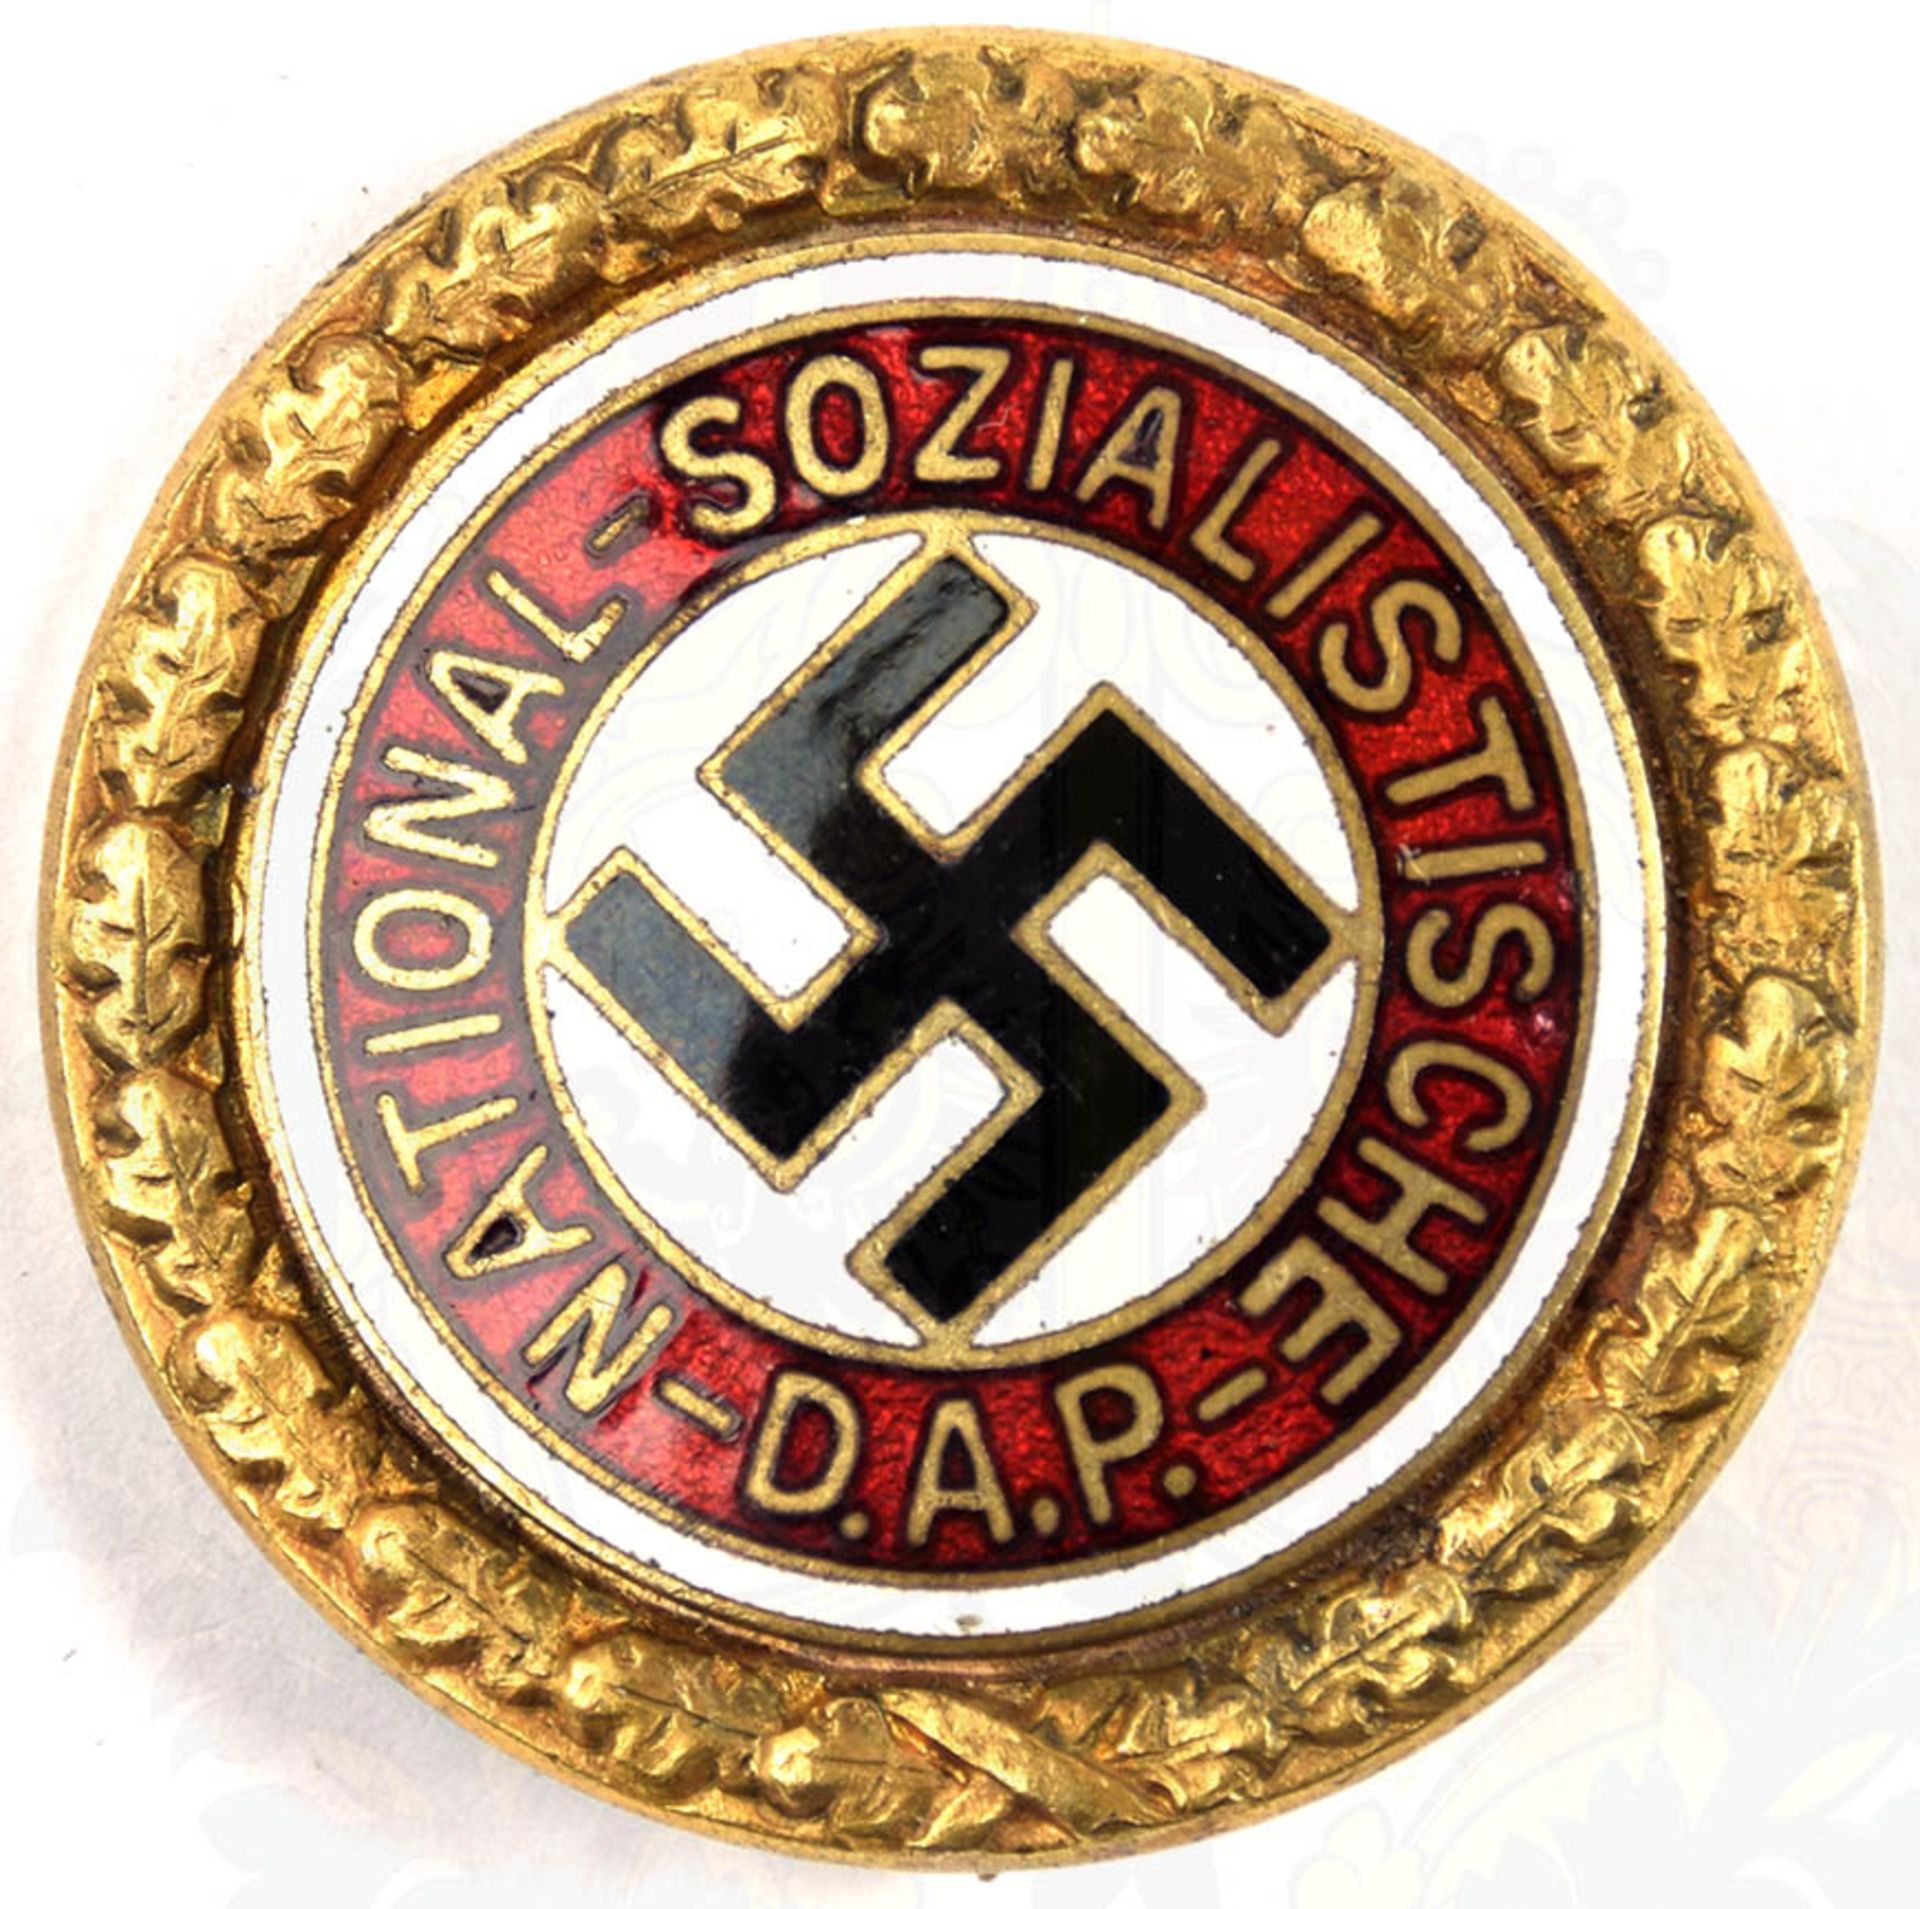 GOLDENES EHRENZEICHEN DER NSDAP, Sammleranfertigung/Repro, Buntmetall/vergld. u. emaill., rs.